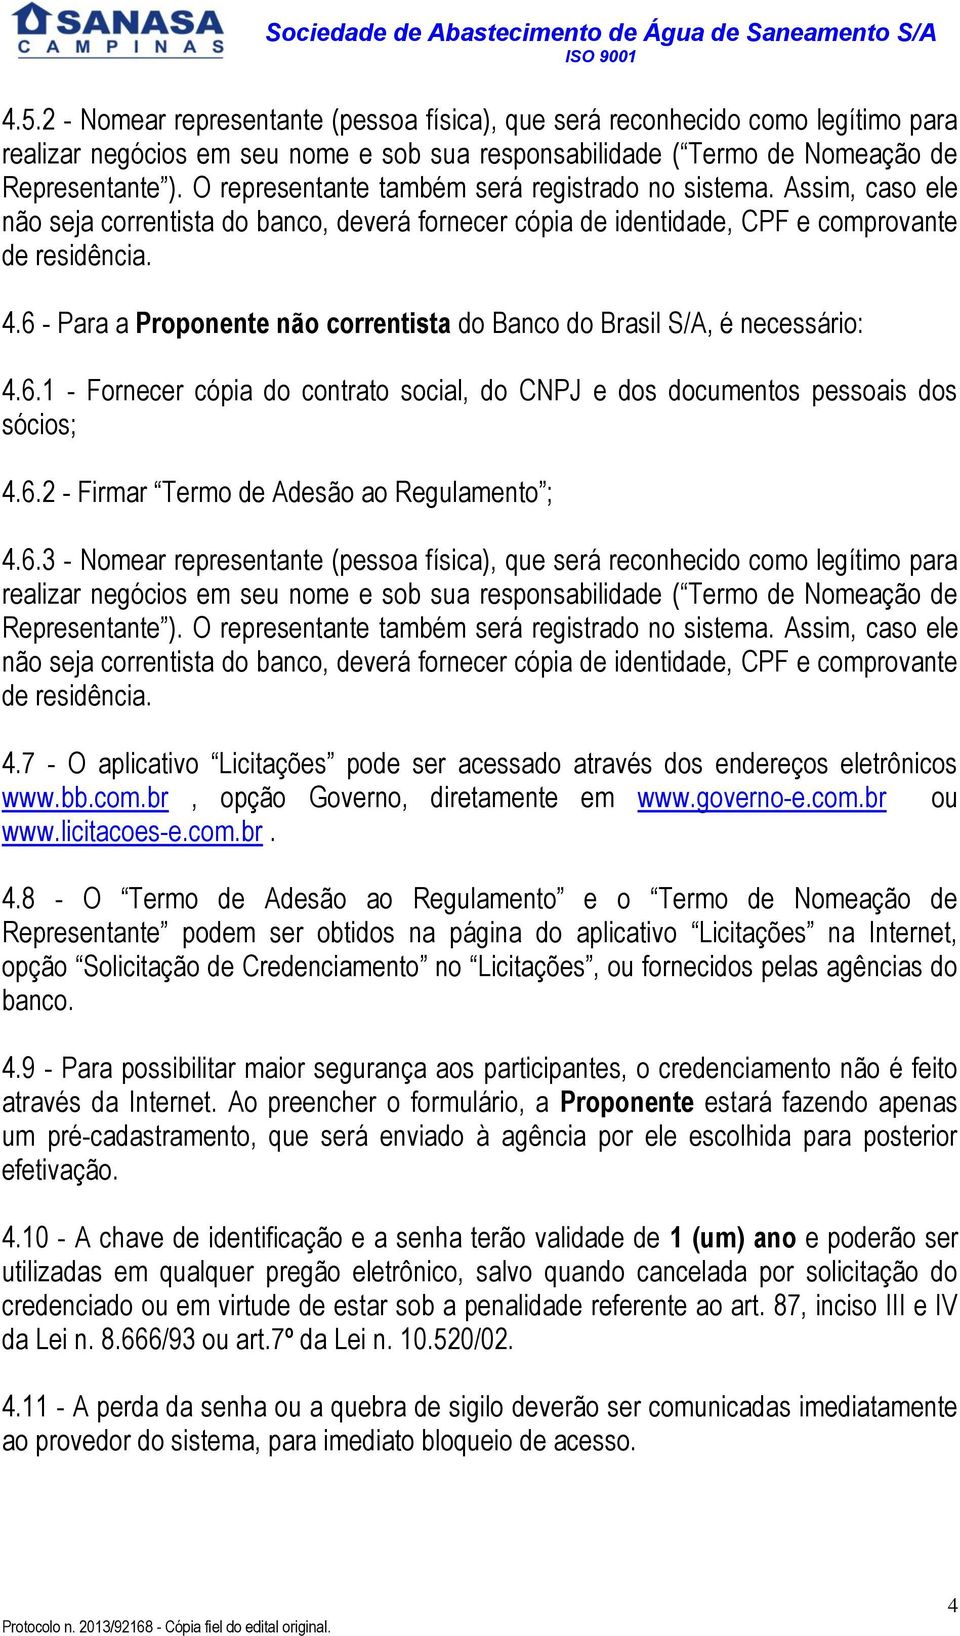 6 - Para a Proponente não correntista do Banco do Brasil S/A, é necessário: 4.6.1 - Fornecer cópia do contrato social, do CNPJ e dos documentos pessoais dos sócios; 4.6.2 - Firmar Termo de Adesão ao Regulamento ; 4.